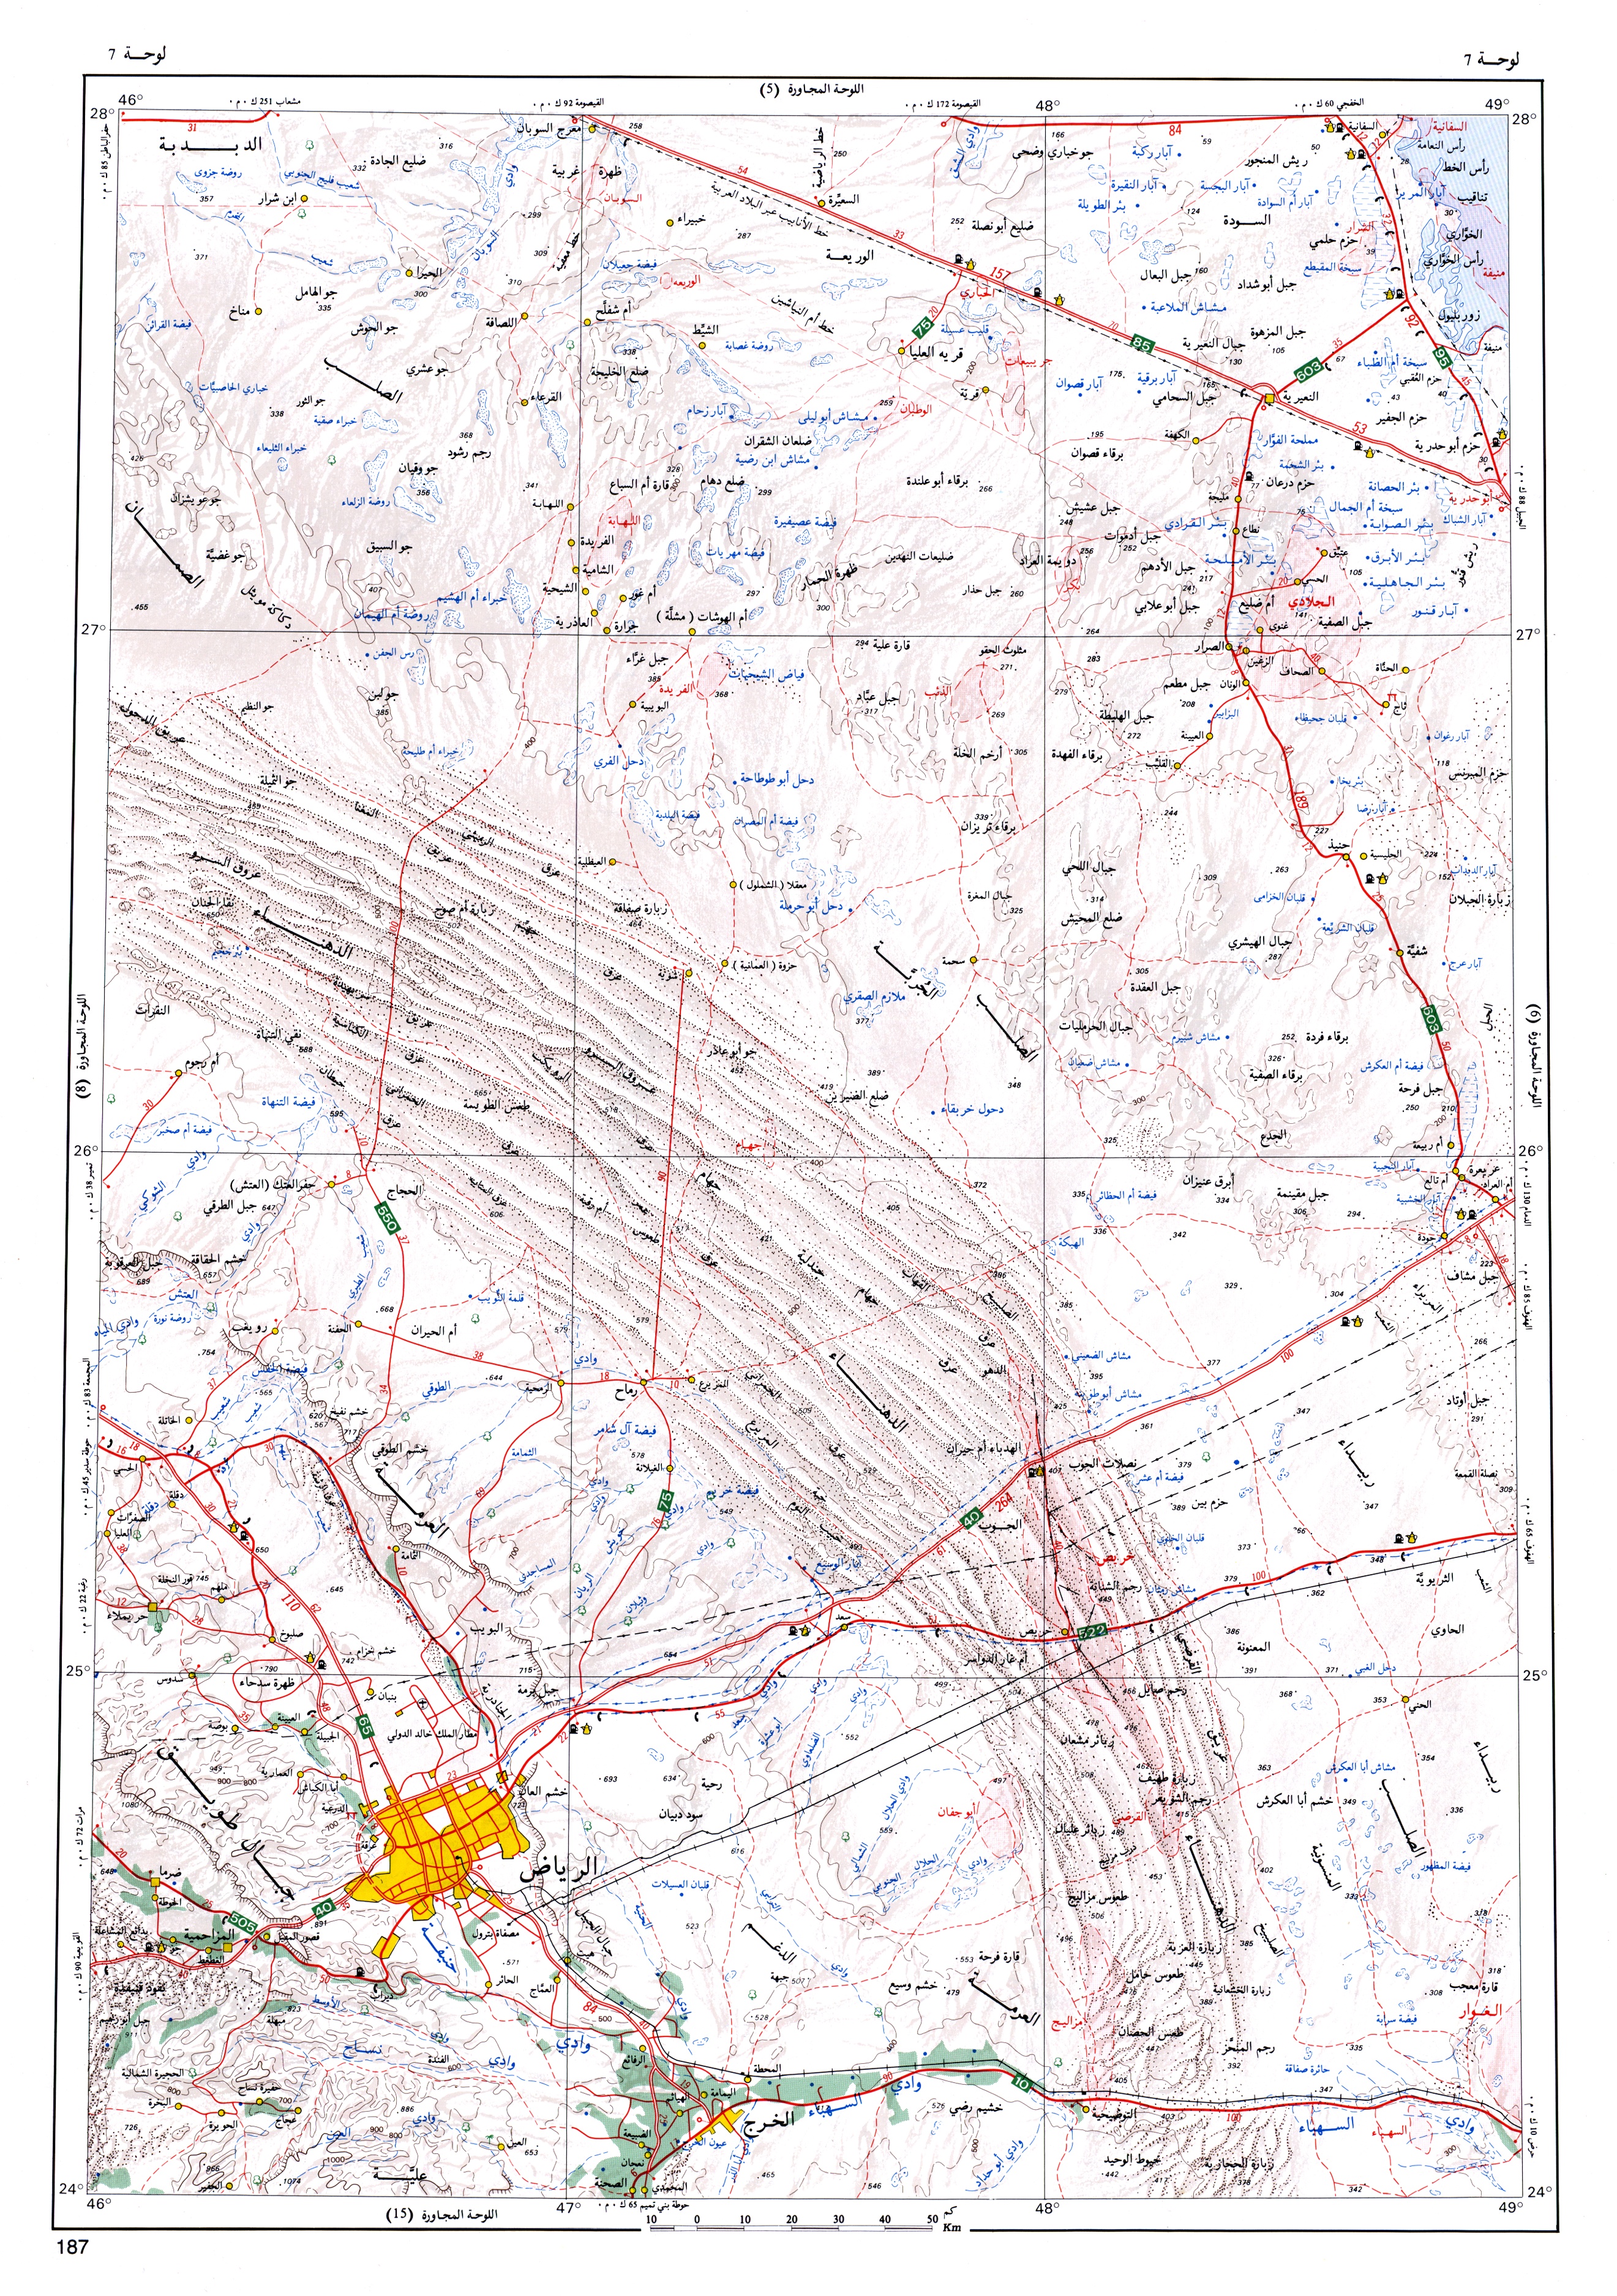 خرائط حديثة وتفصيلية تغطي جميع مناطق المملكة العربية السعوديه Fig-07